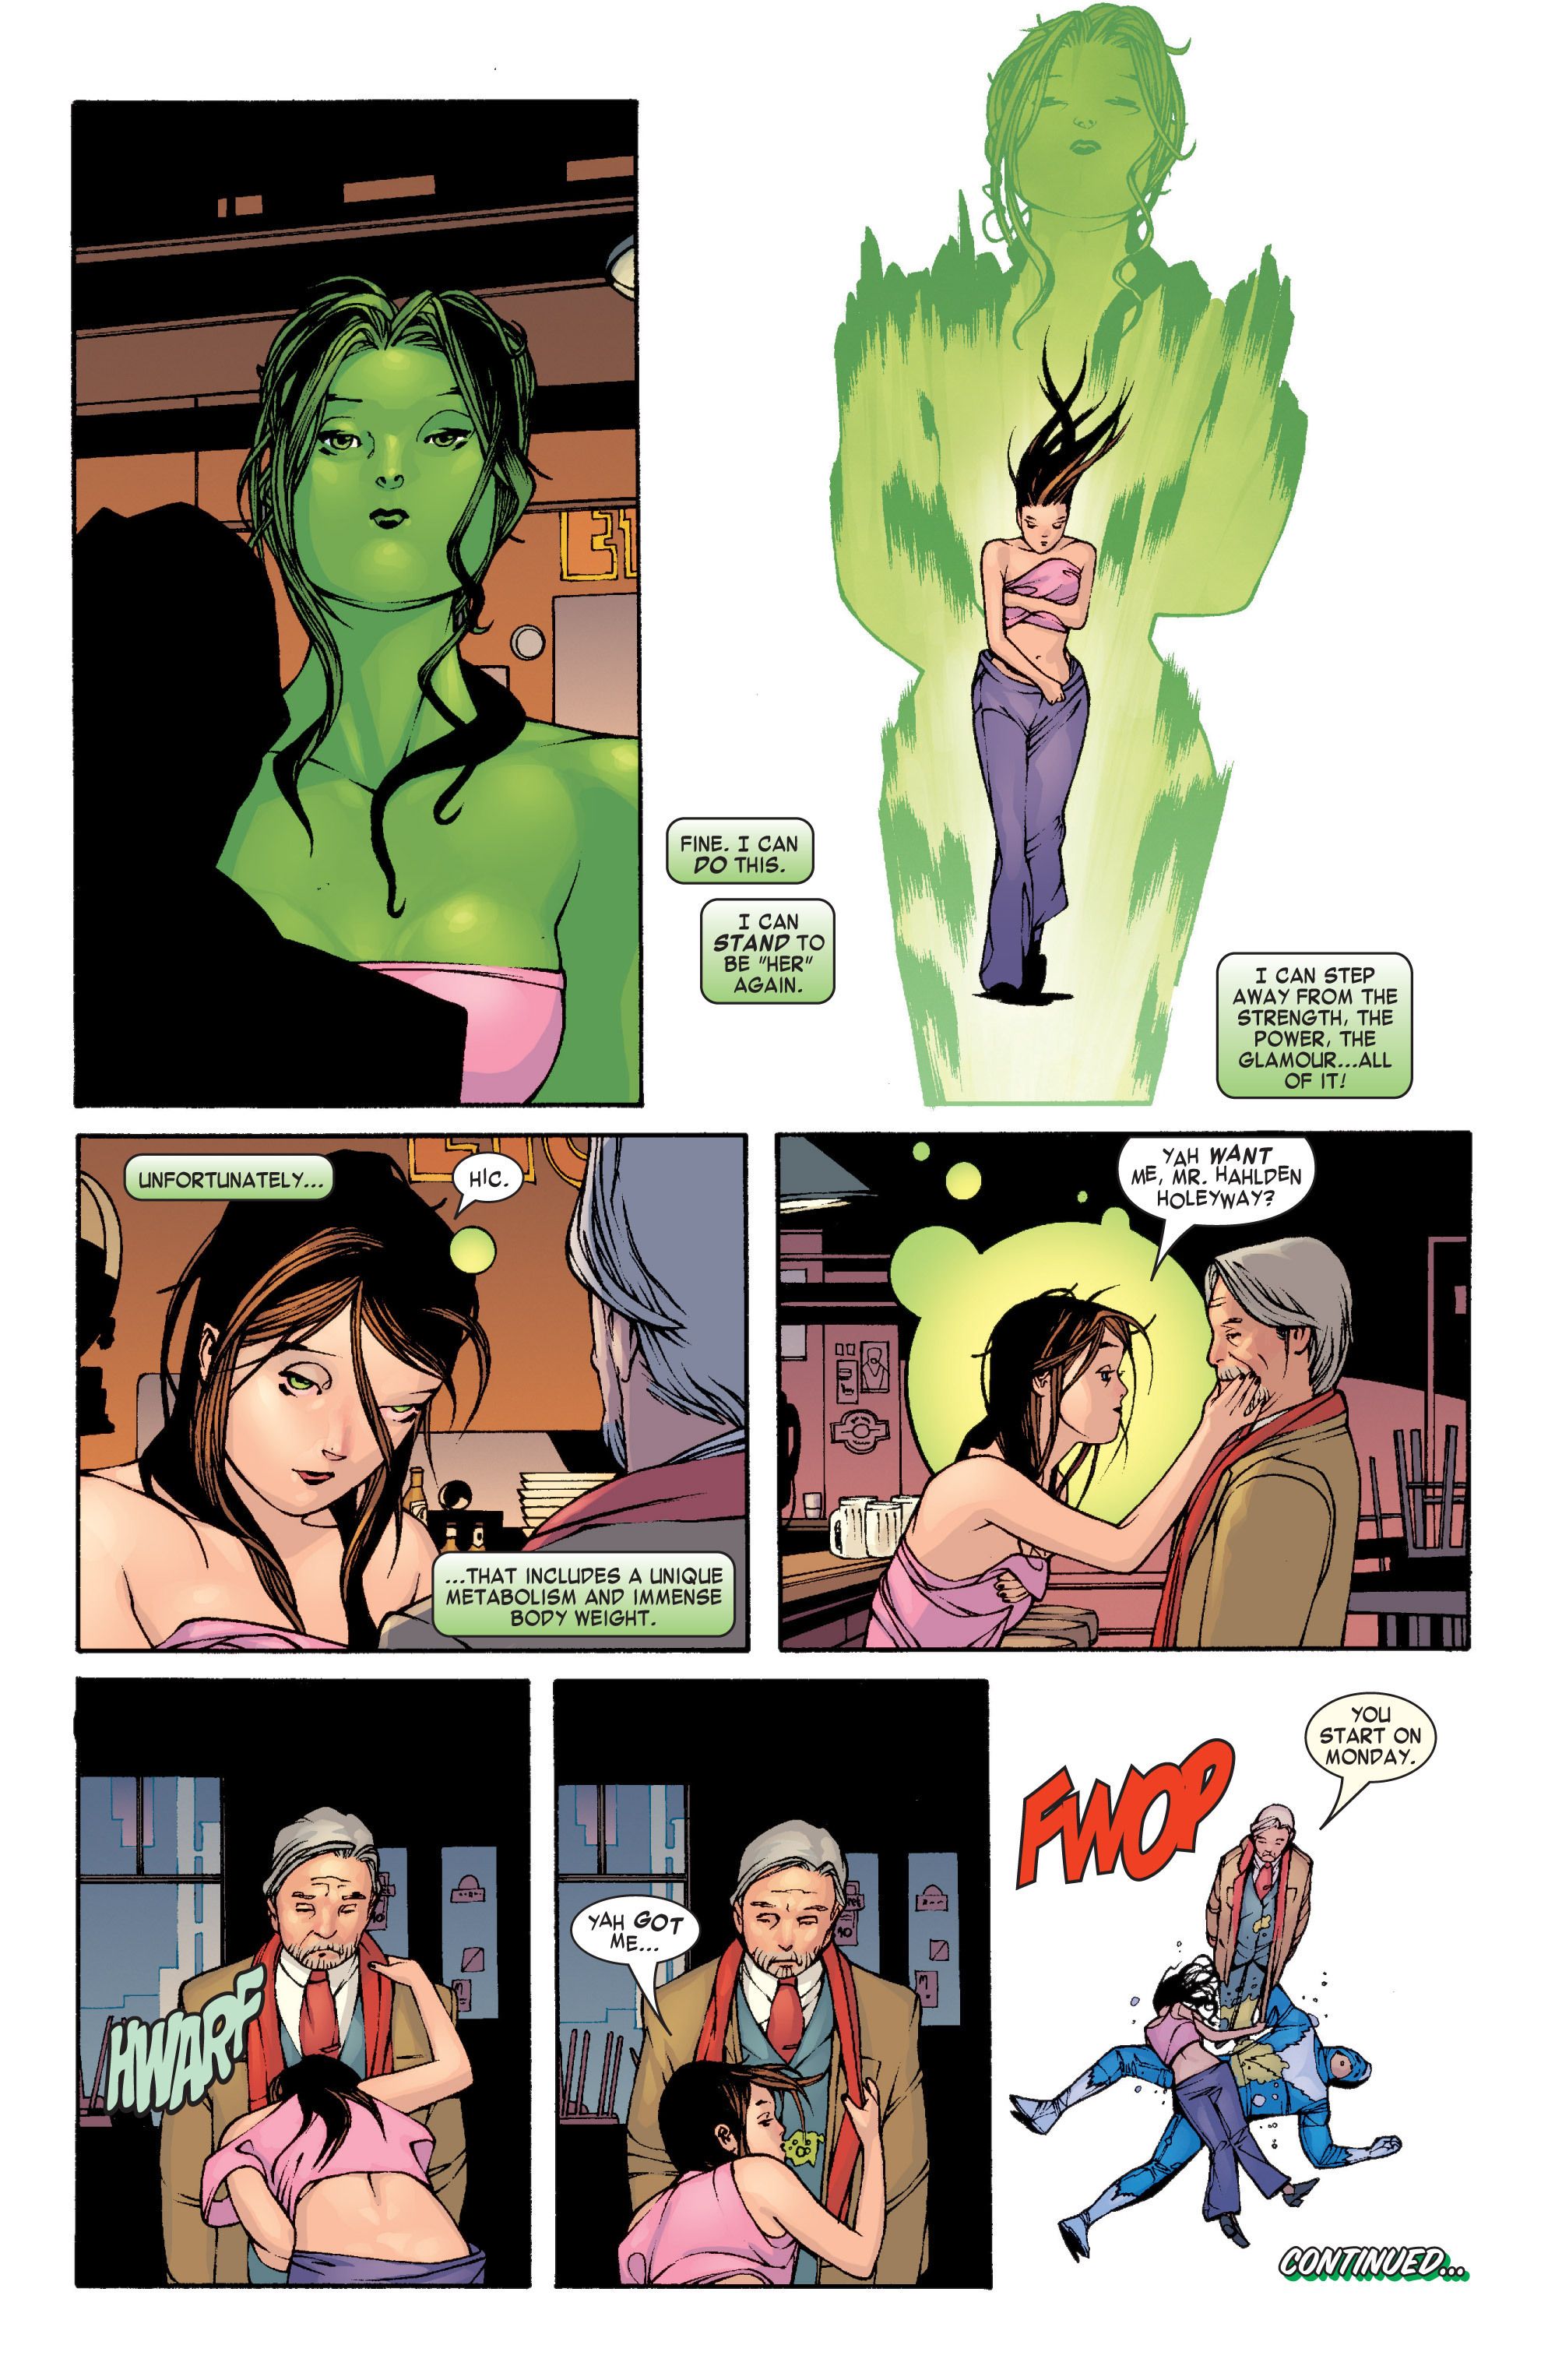 She-Hulk Will Never Turn Human Again. Or Maybe She Will. Whatever.